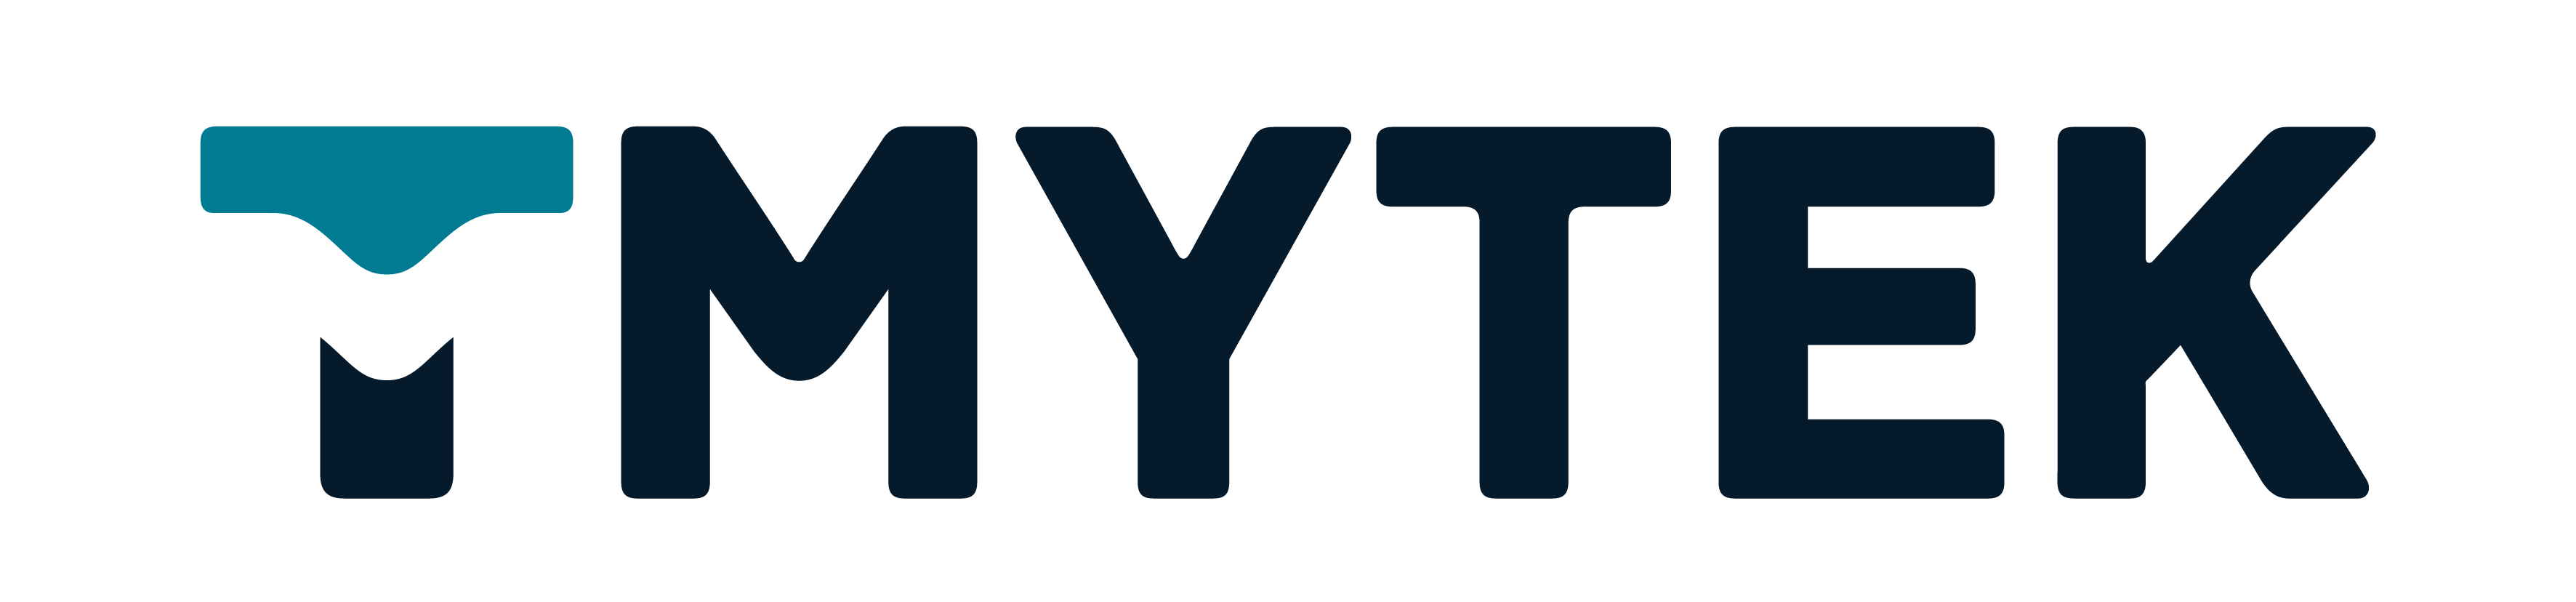 TMY Technology Inc. (TMYTEK)